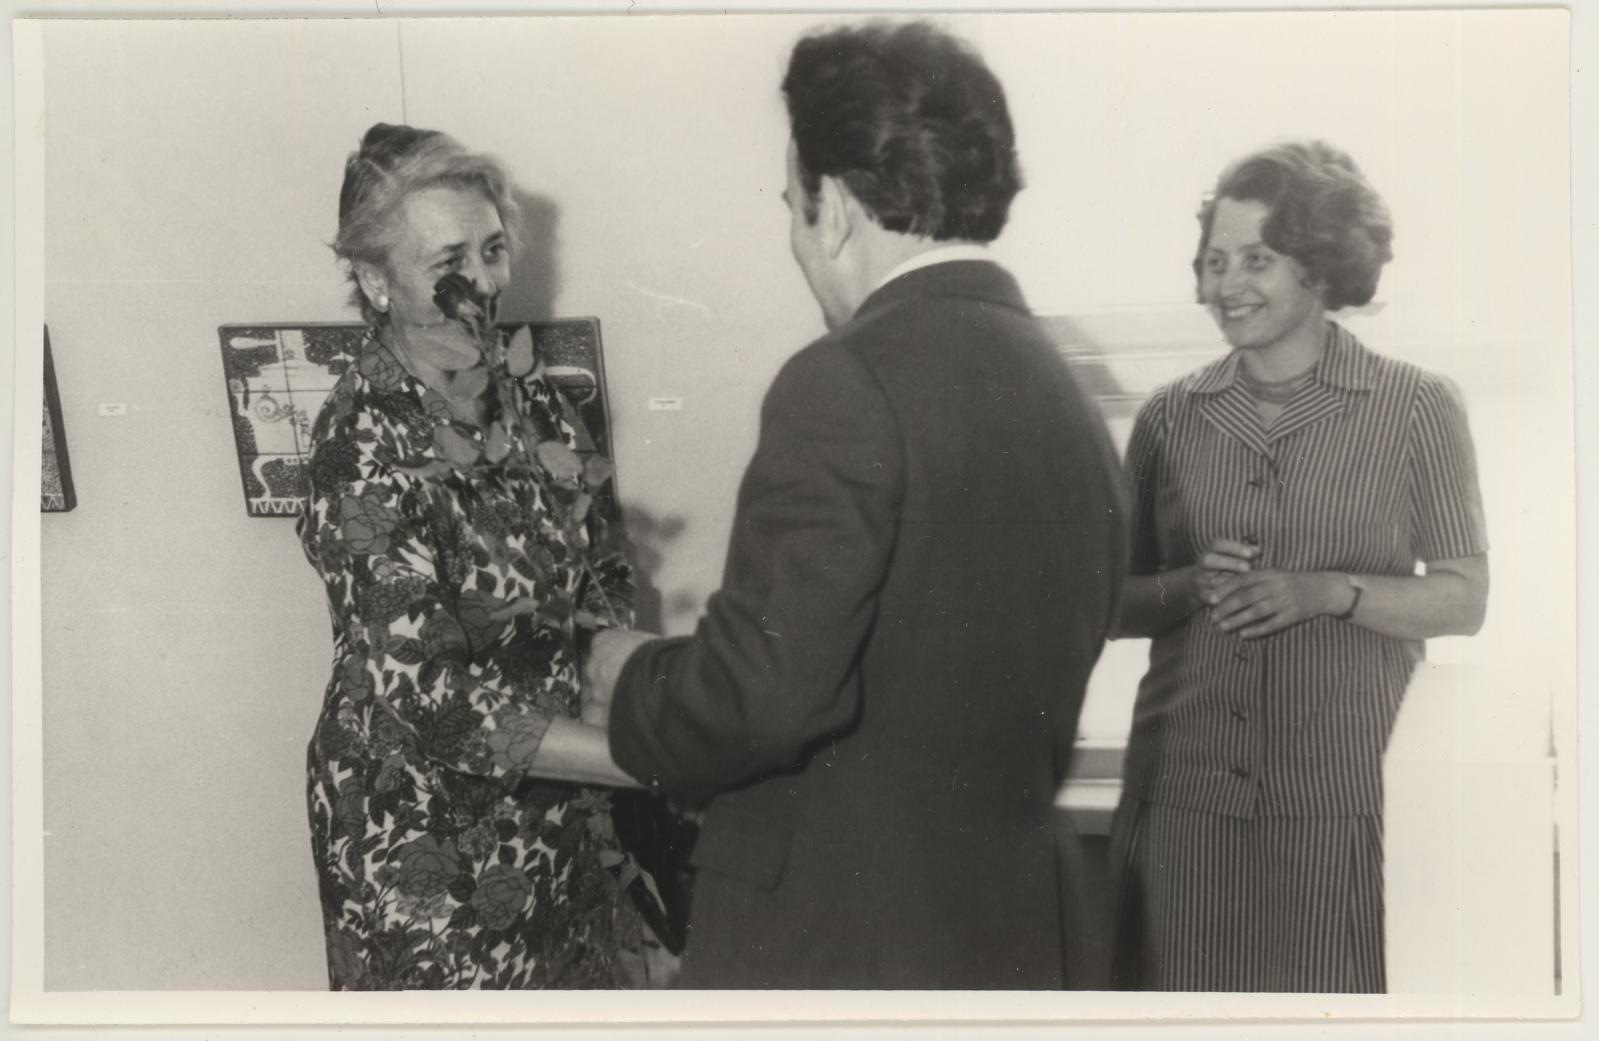 Helene Kuma keraamikanäituse avamine 21.05.1971. ENSV Kunstnike Liidu Tartu osakonna esimees Efraim Allsalu õnnitleb Helene Kuma.